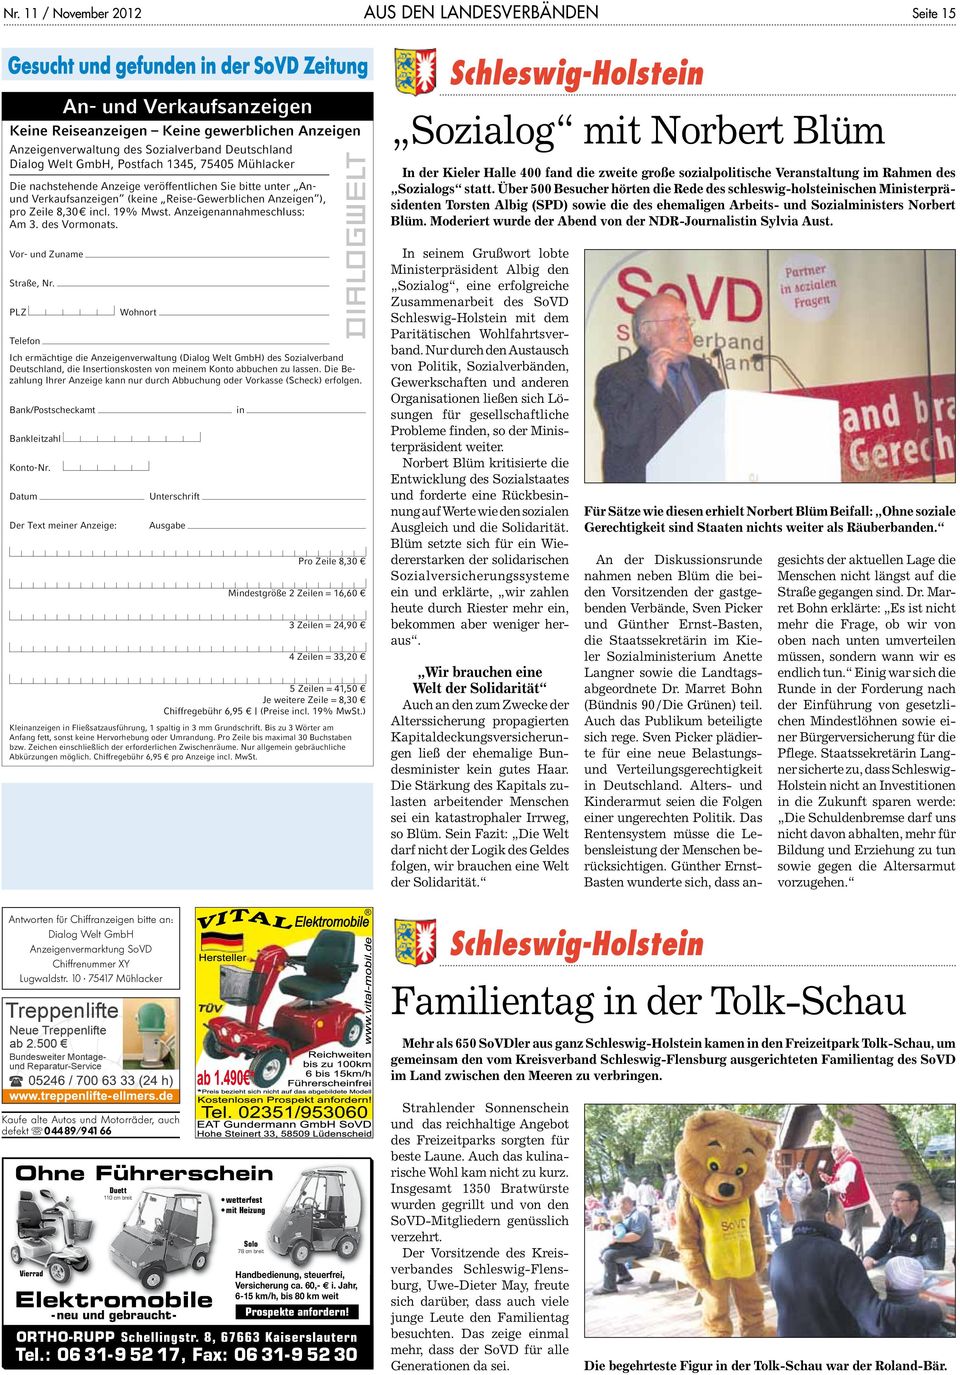 Anzeigenannahmeschluss: Am 3. des Vormonats. Schleswig-Holstein Sozialog mit Norbert Blüm In der Kieler Halle 400 fand die zweite große sozialpolitische Veranstaltung im Rahmen des Sozialogs statt.